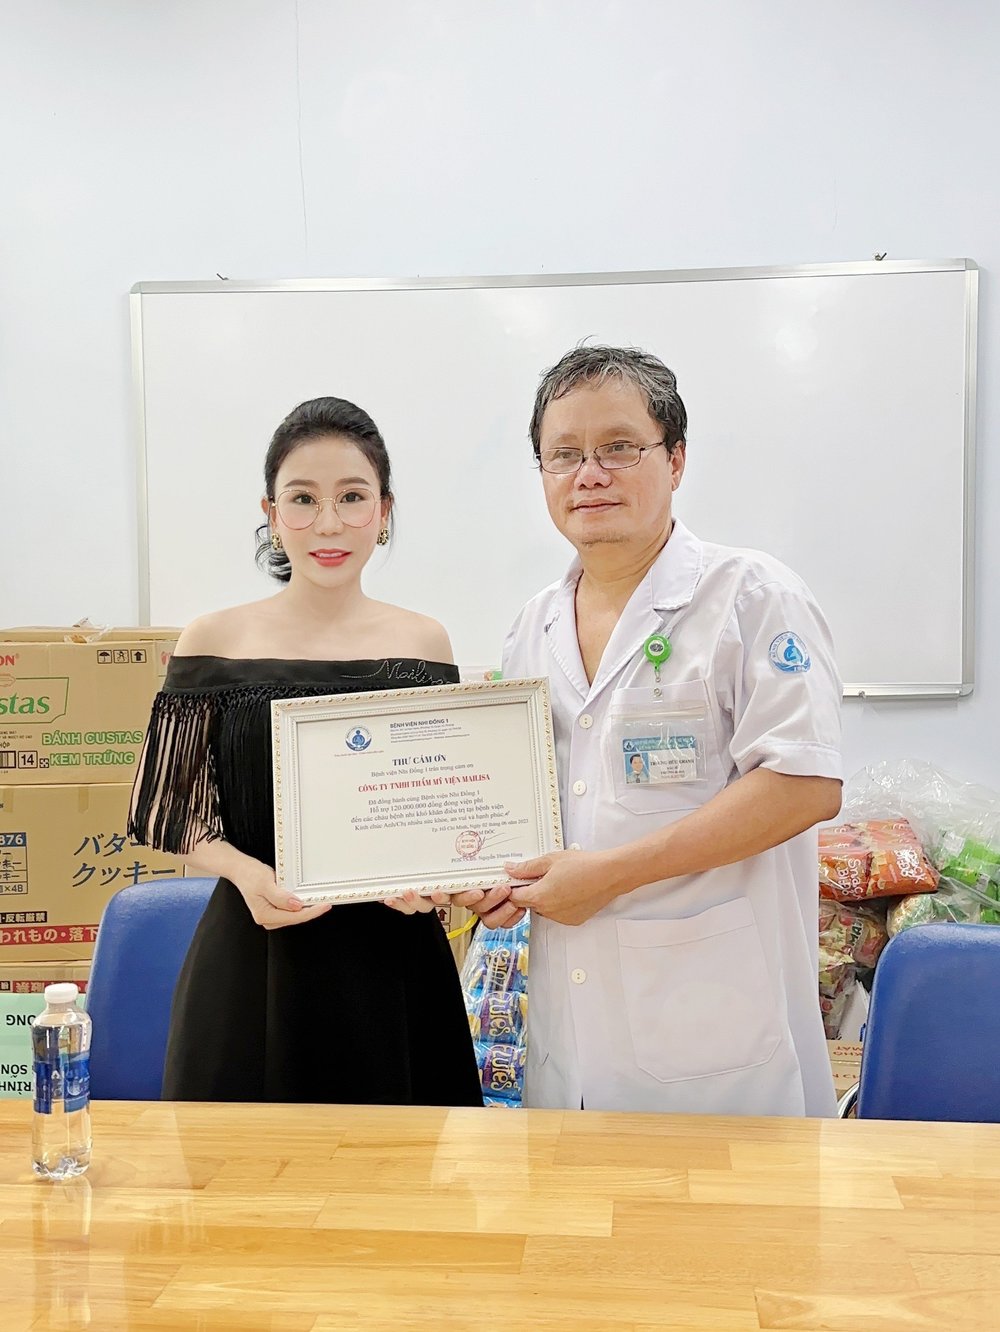  
Nữ doanh nhân nhận thư cảm ơn từ bệnh viện Nhi Đồng 1